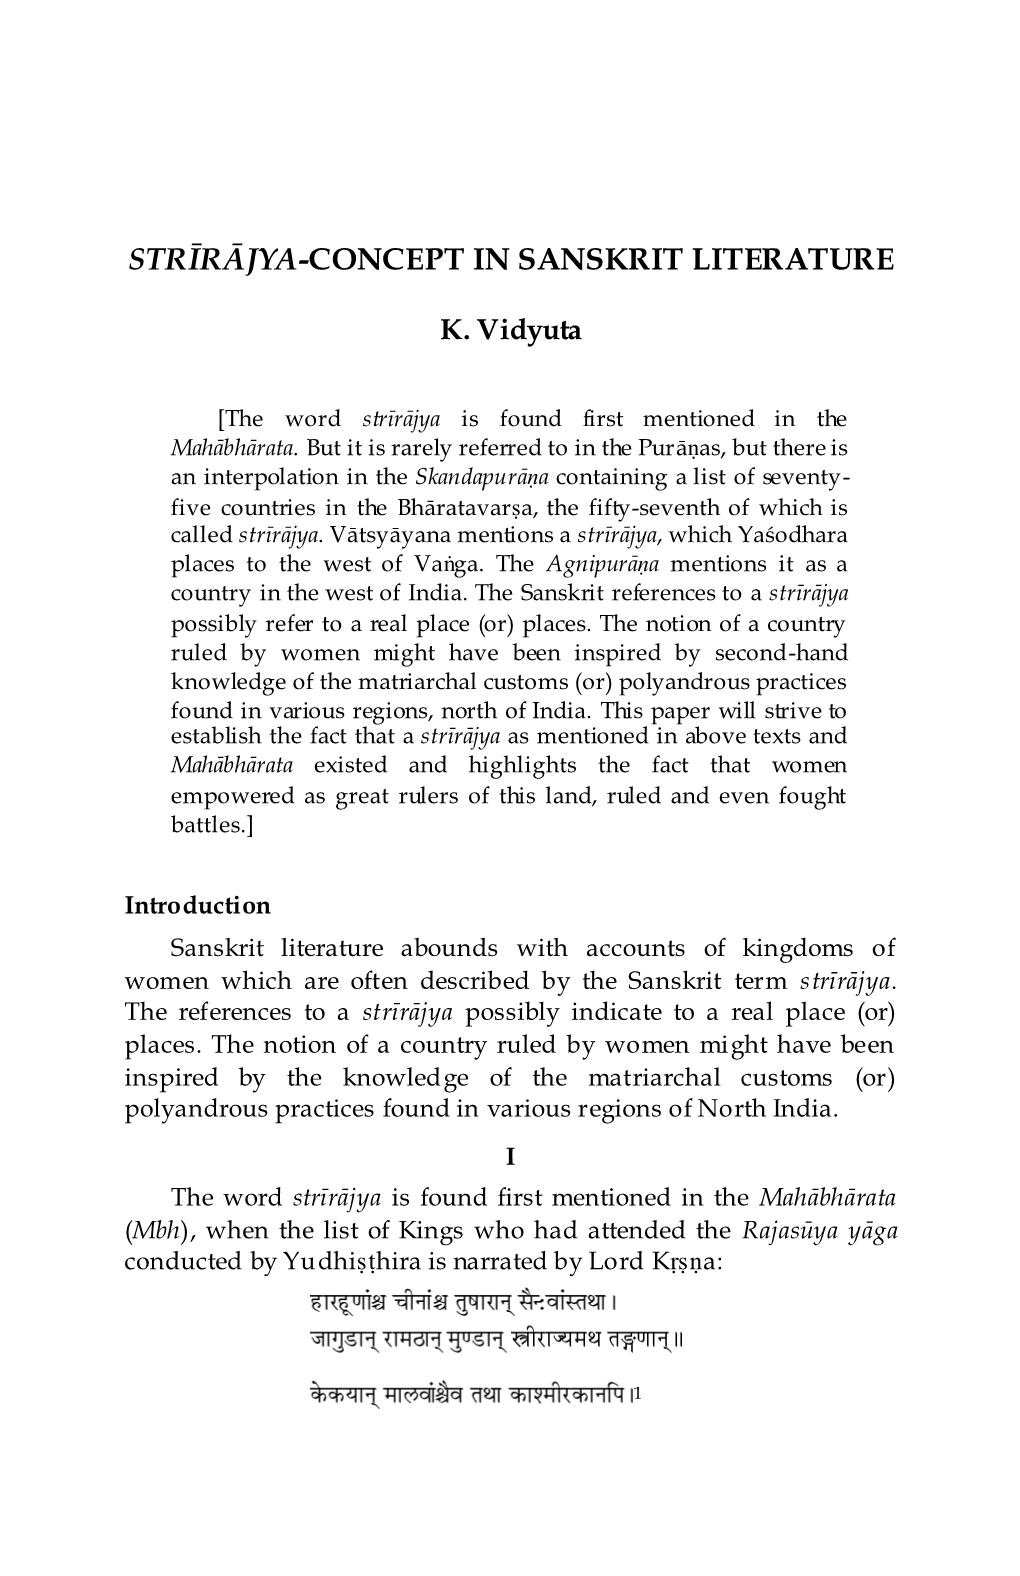 Strīrājya-Concept in Sanskrit Literature